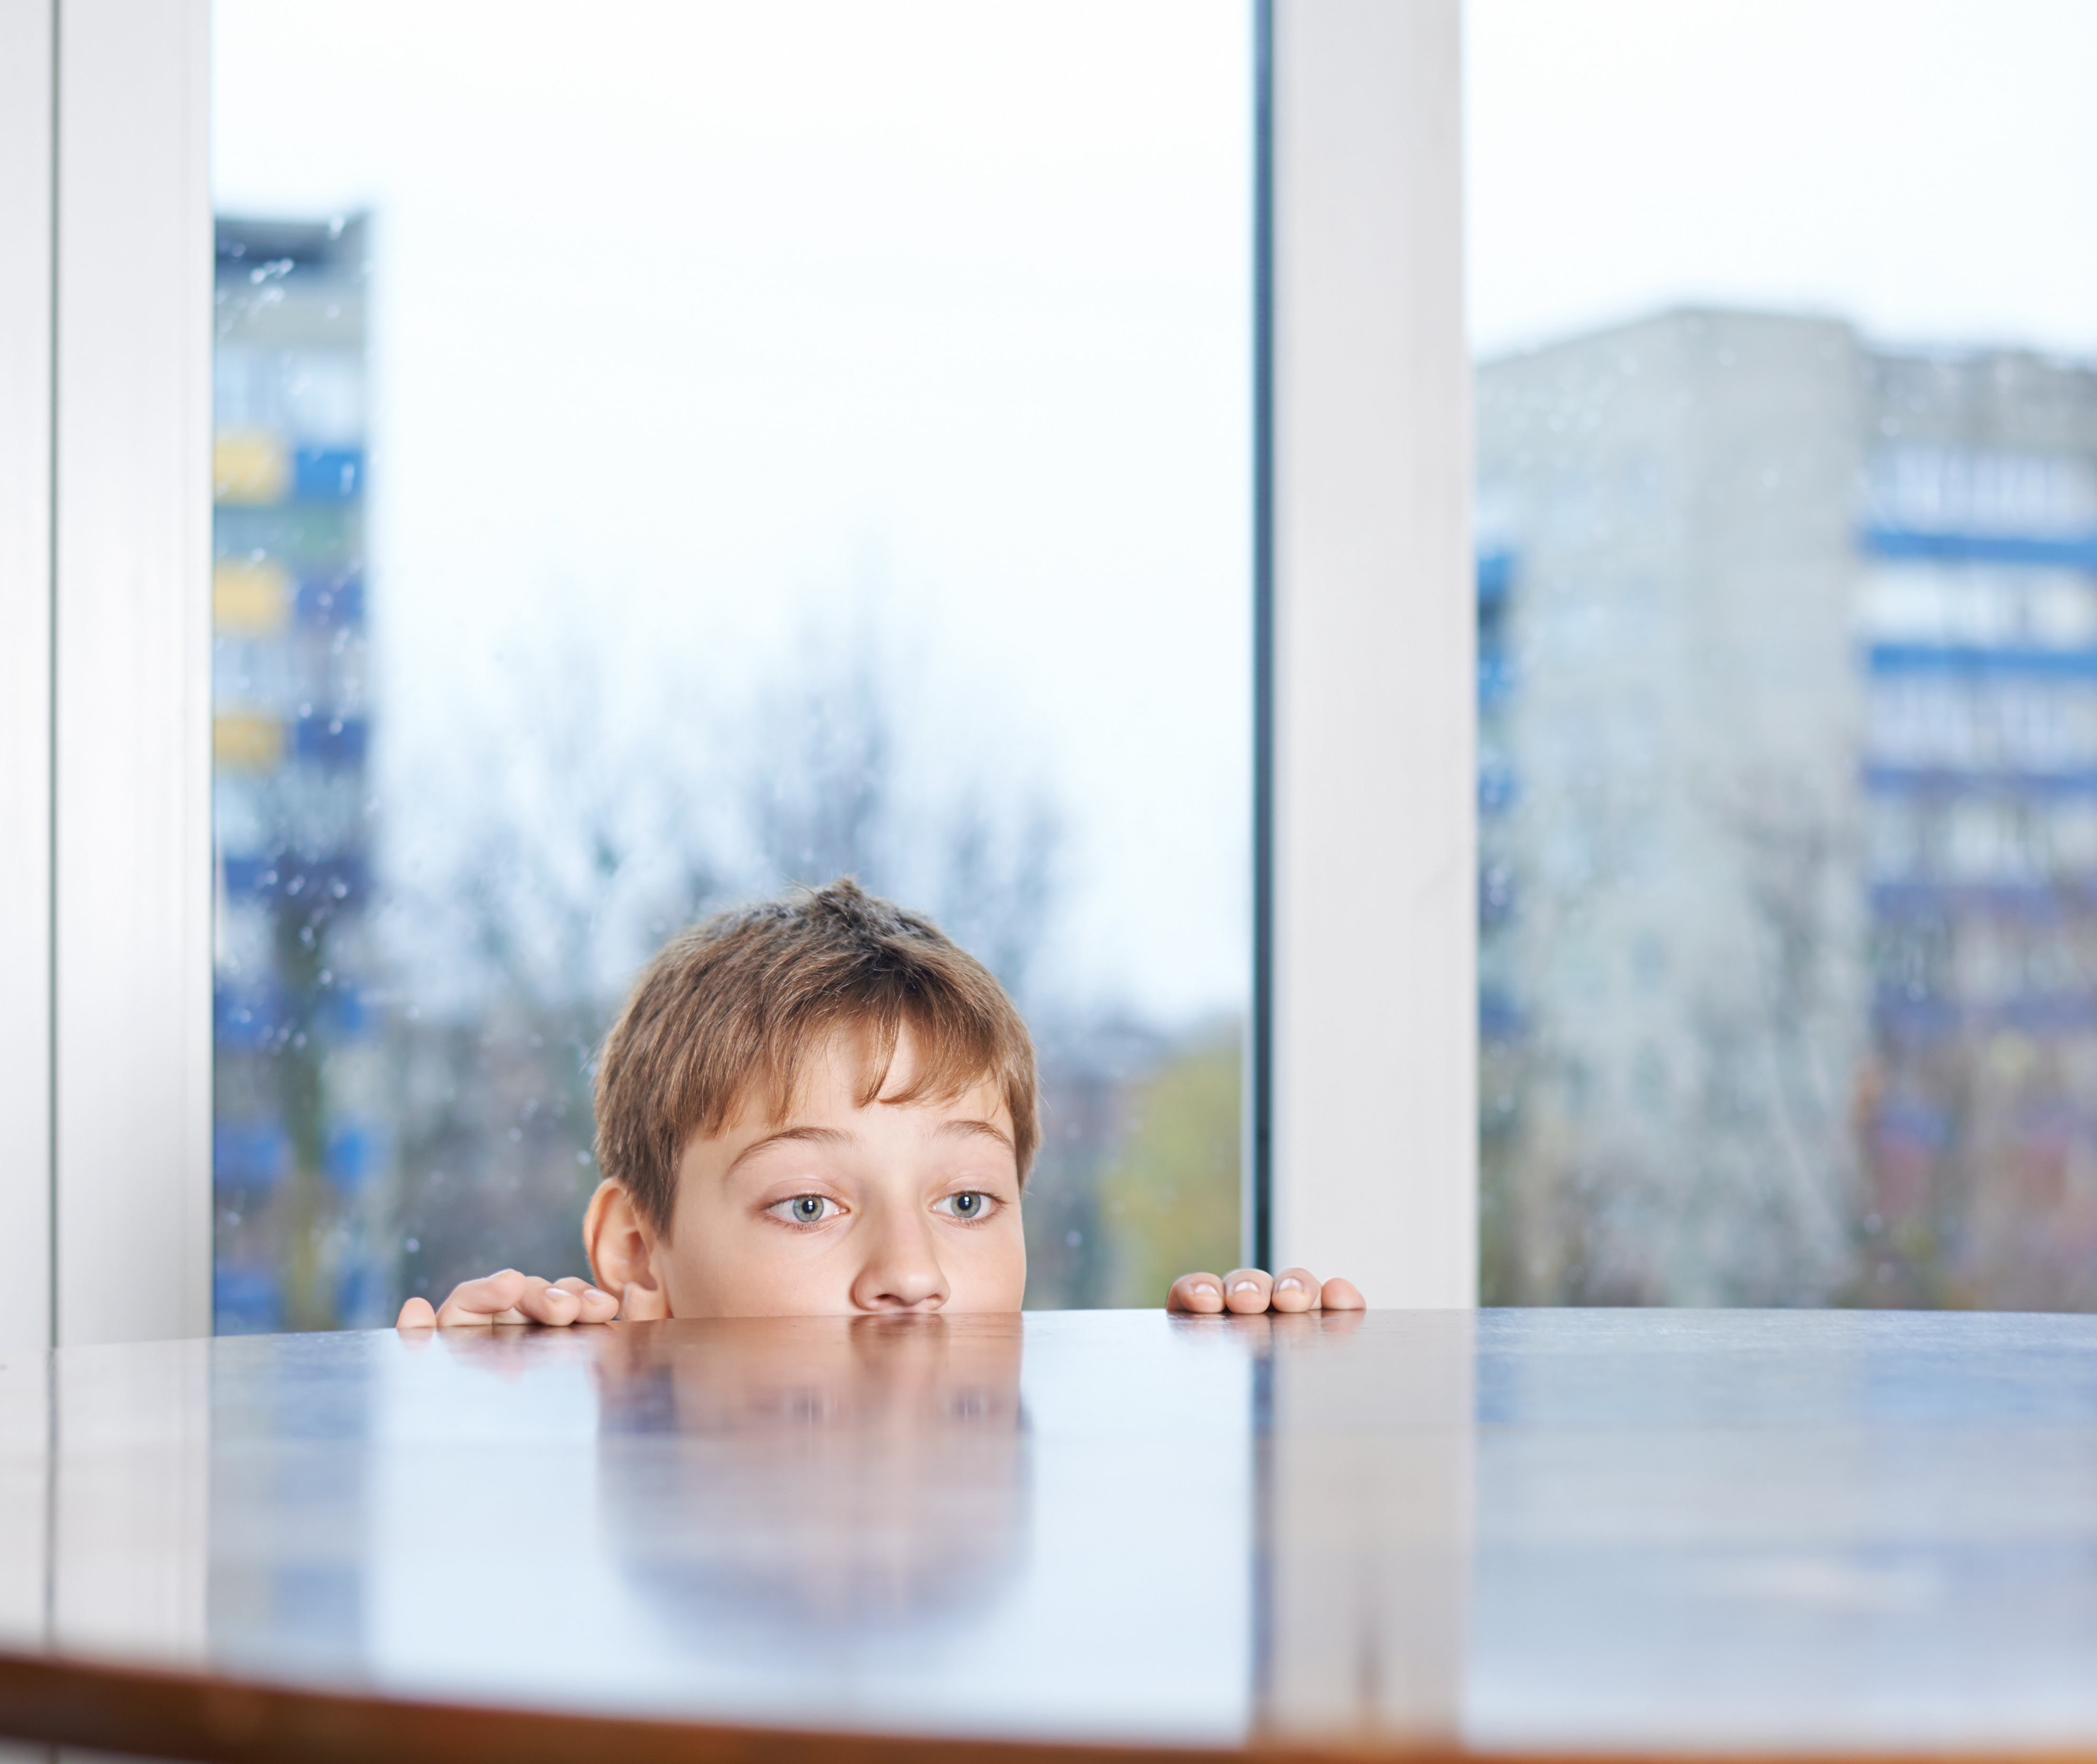 Un jeune garçon jetant un coup d'œil derrière une table en bois | Source : Shutterstock